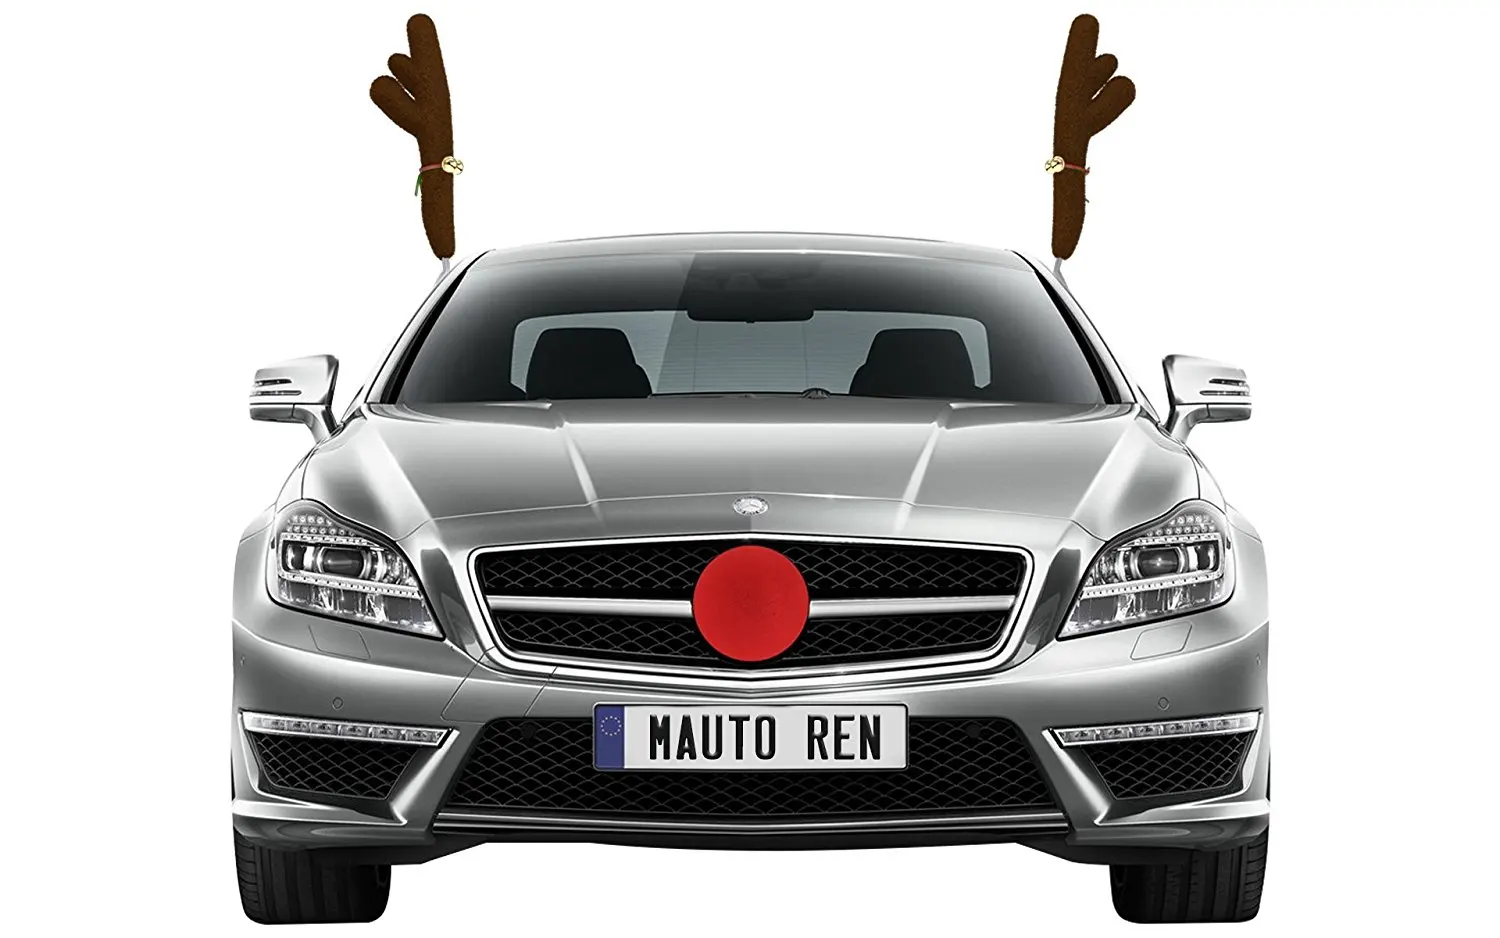 Reindeer nose for car